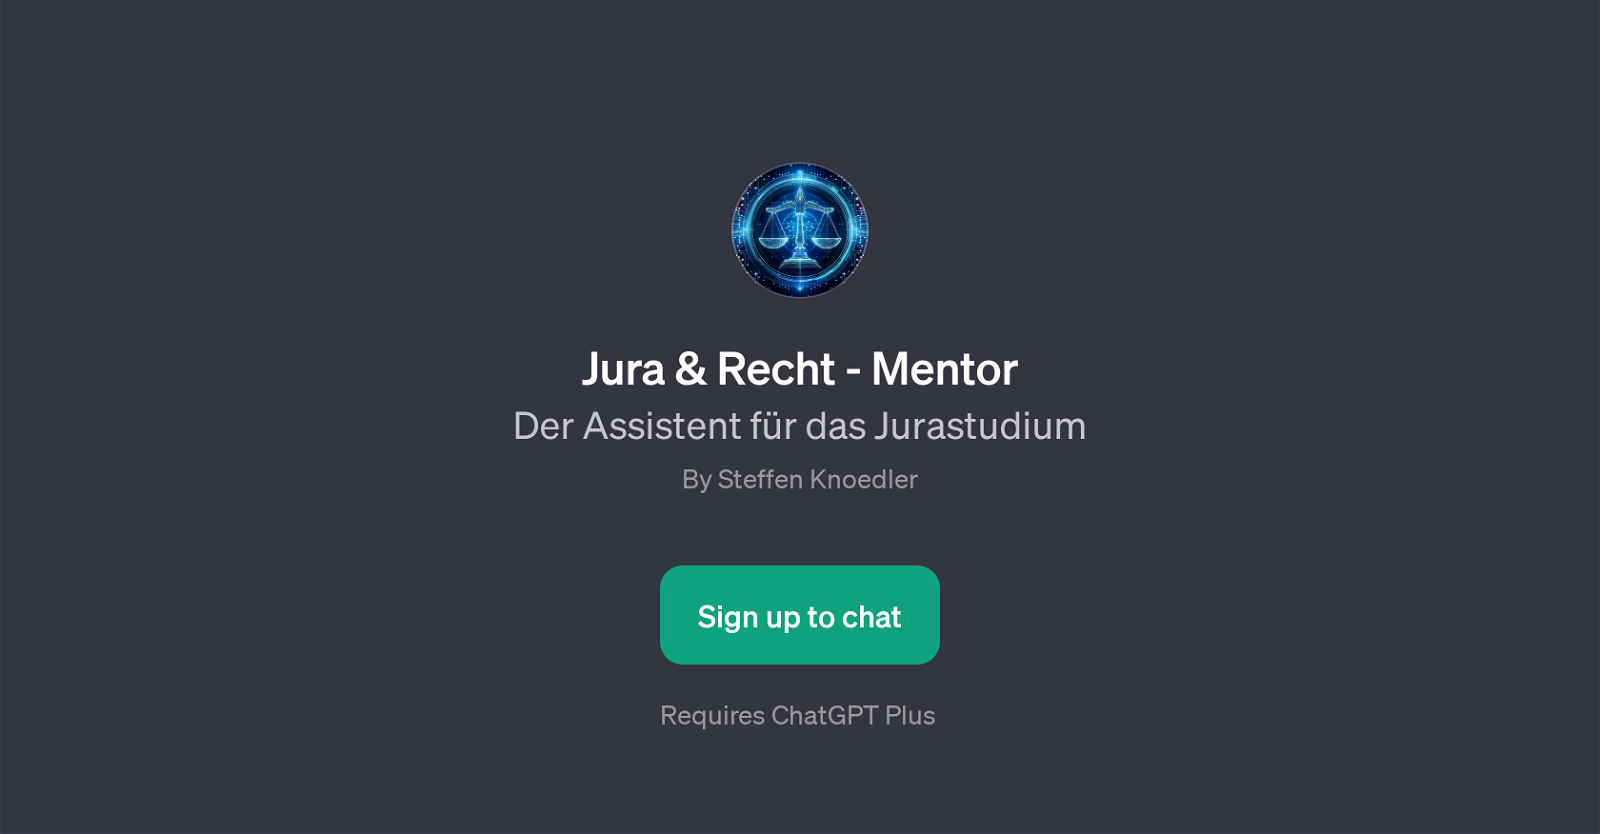 Jura & Recht - Mentor website